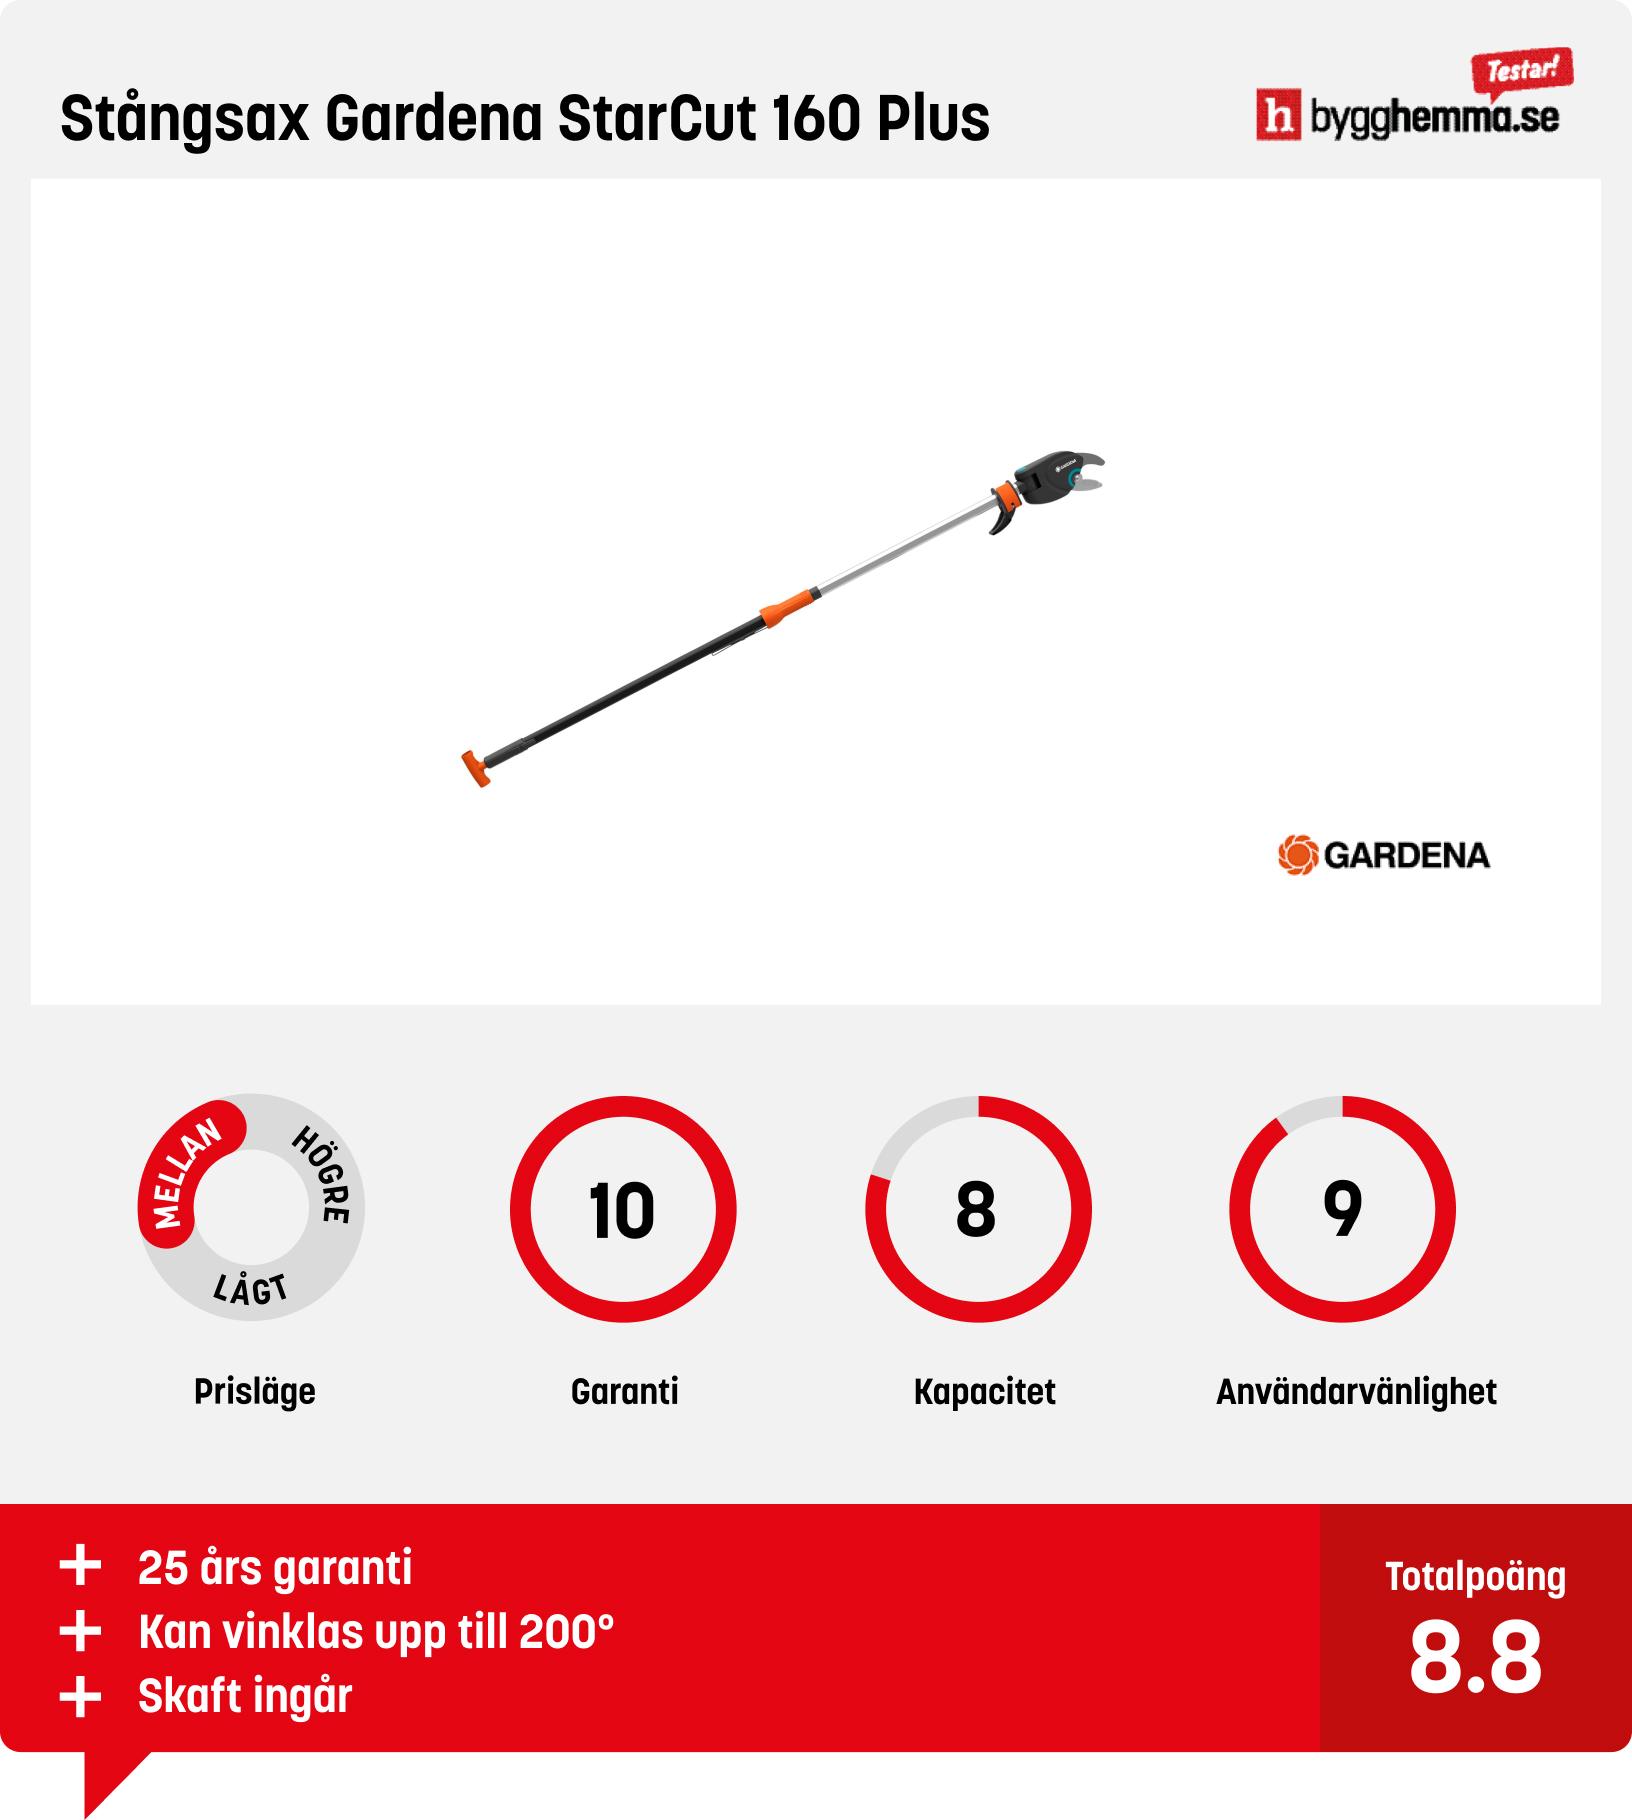 Stångsax test - Stångsax Gardena StarCut 160 Plus